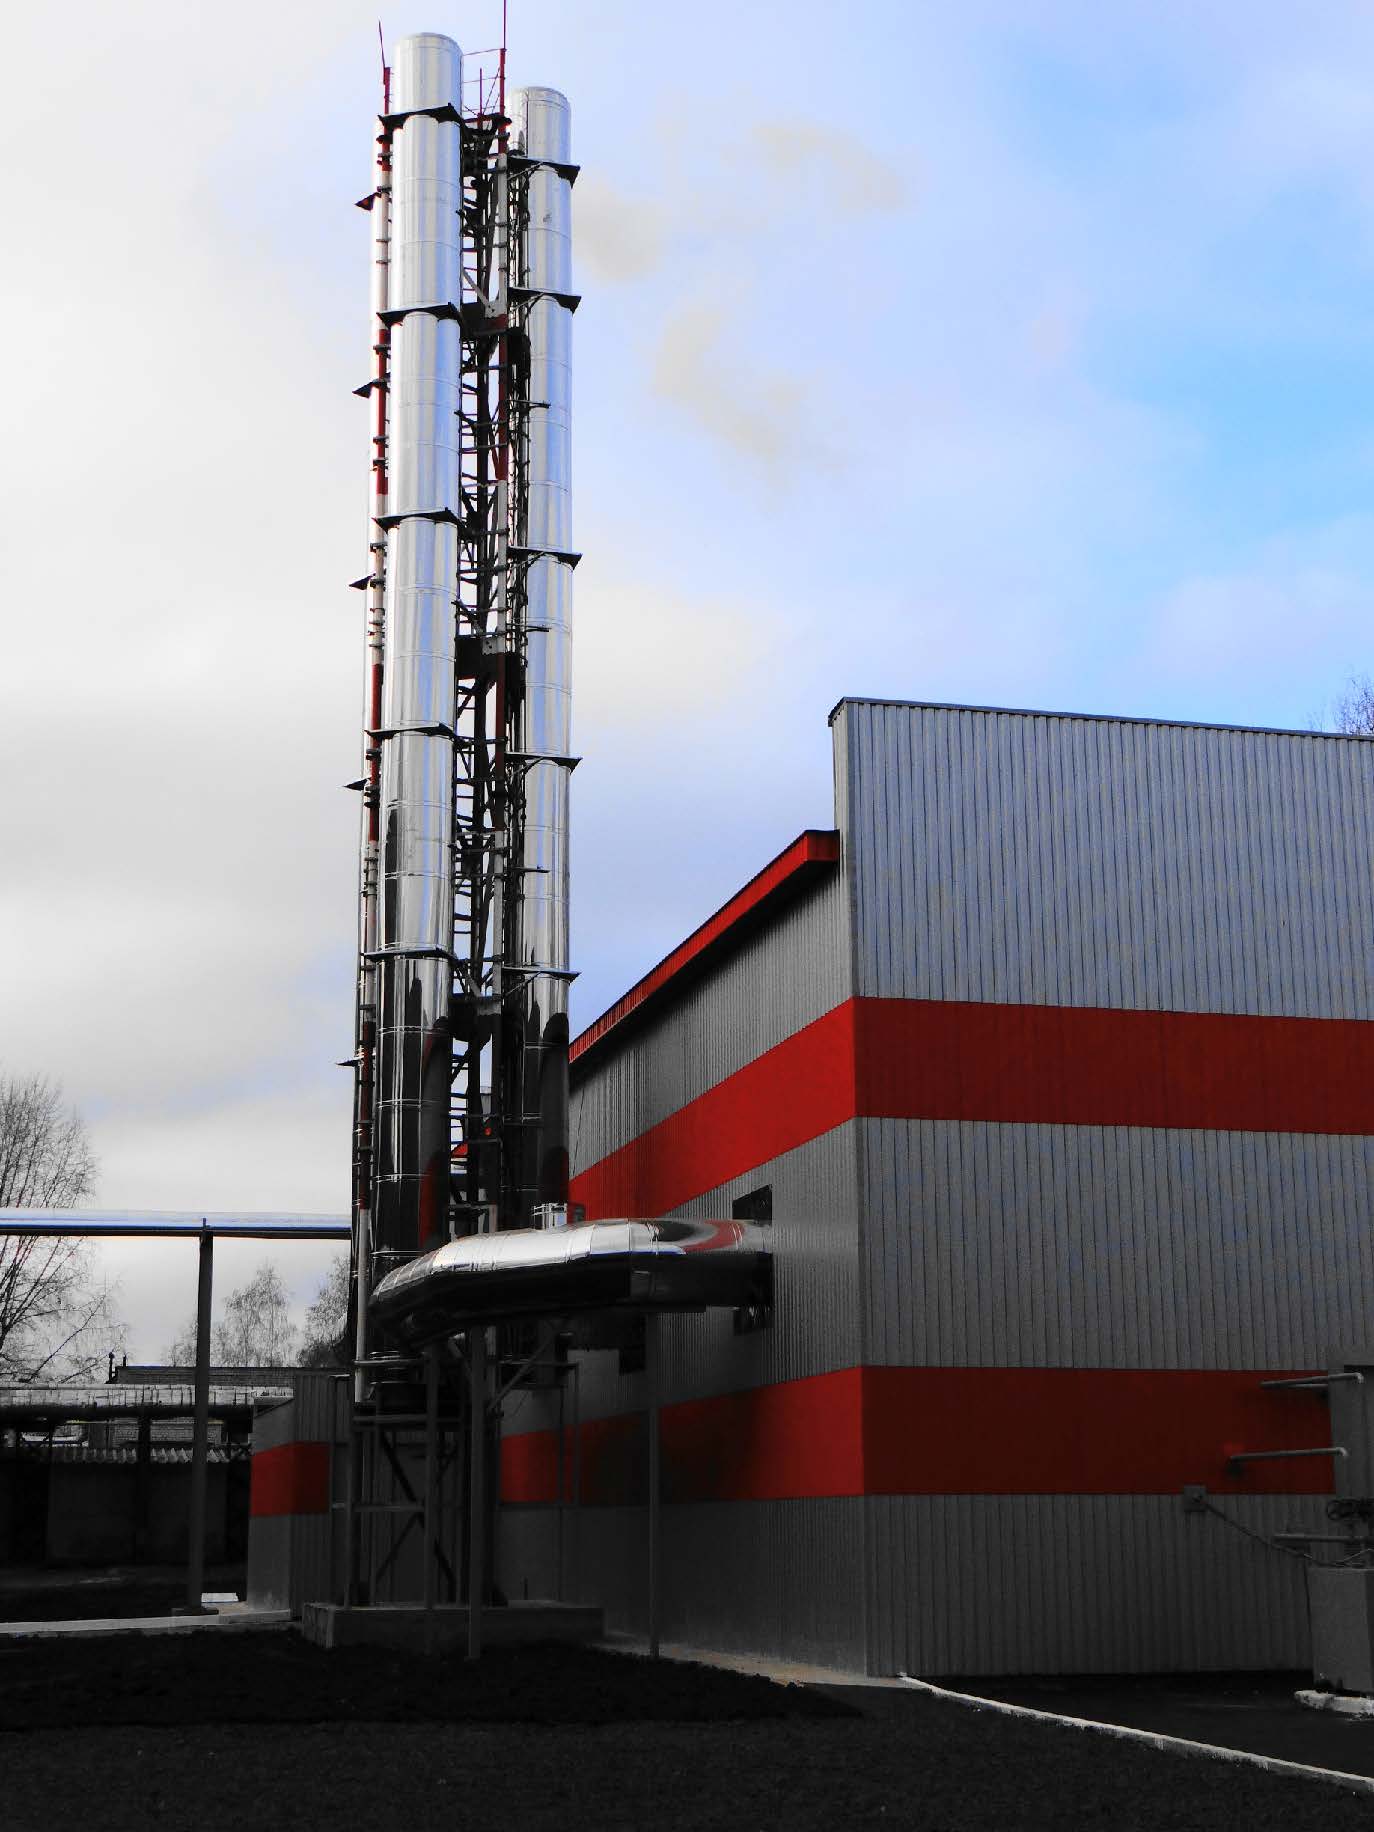 Промышленные дымовые трубы - объект проверки на соответствие стандартам безопасности и экологическим нормам